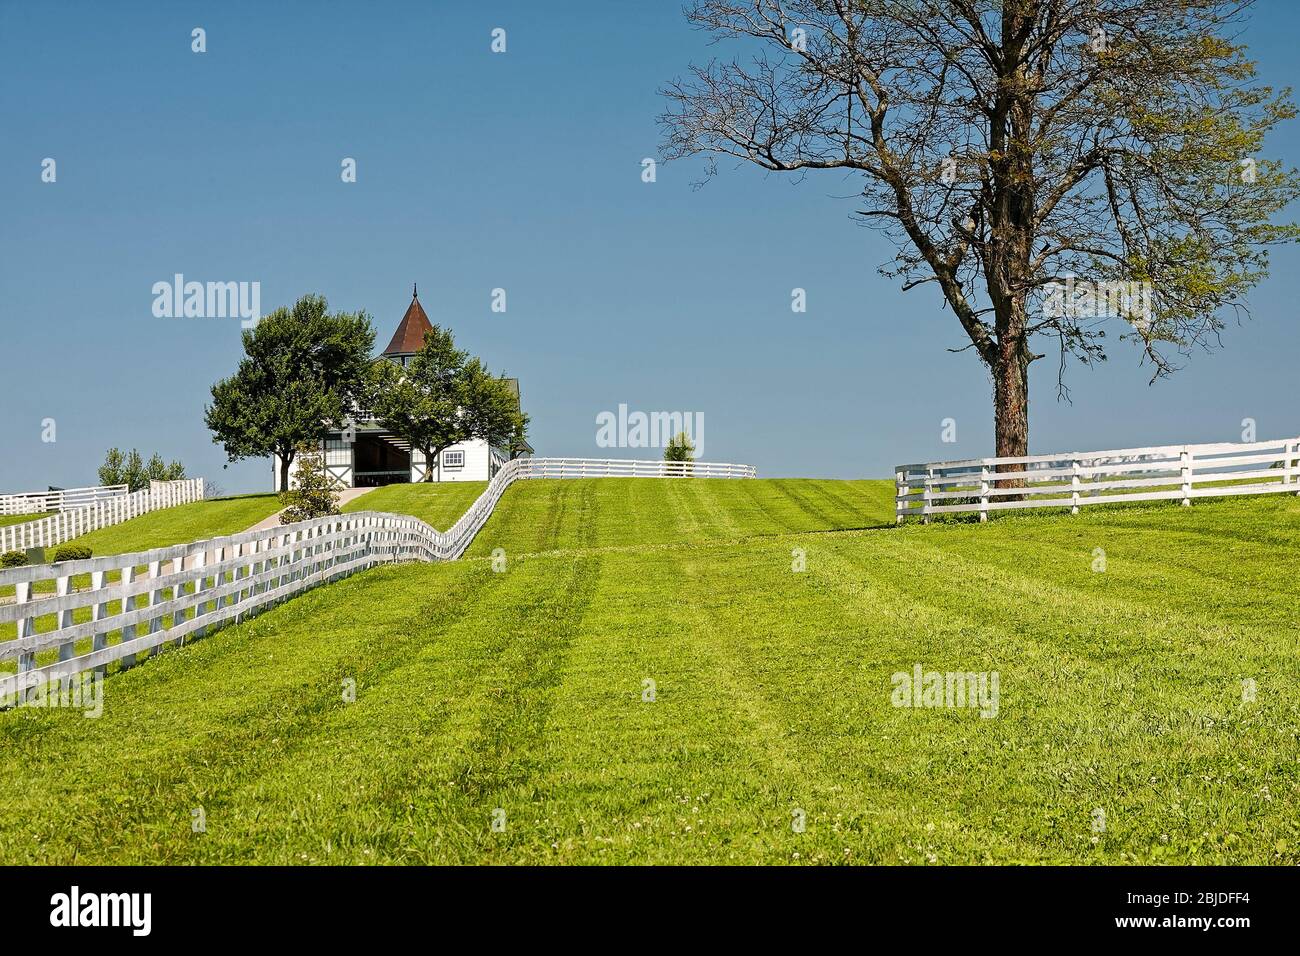 Scène de ferme de cheval, clôtures blanches, grange, coupole, herbe verte, paisible, rurale, arbres, Kentucky; USA;Kentucky; Lexington; KY; printemps Banque D'Images